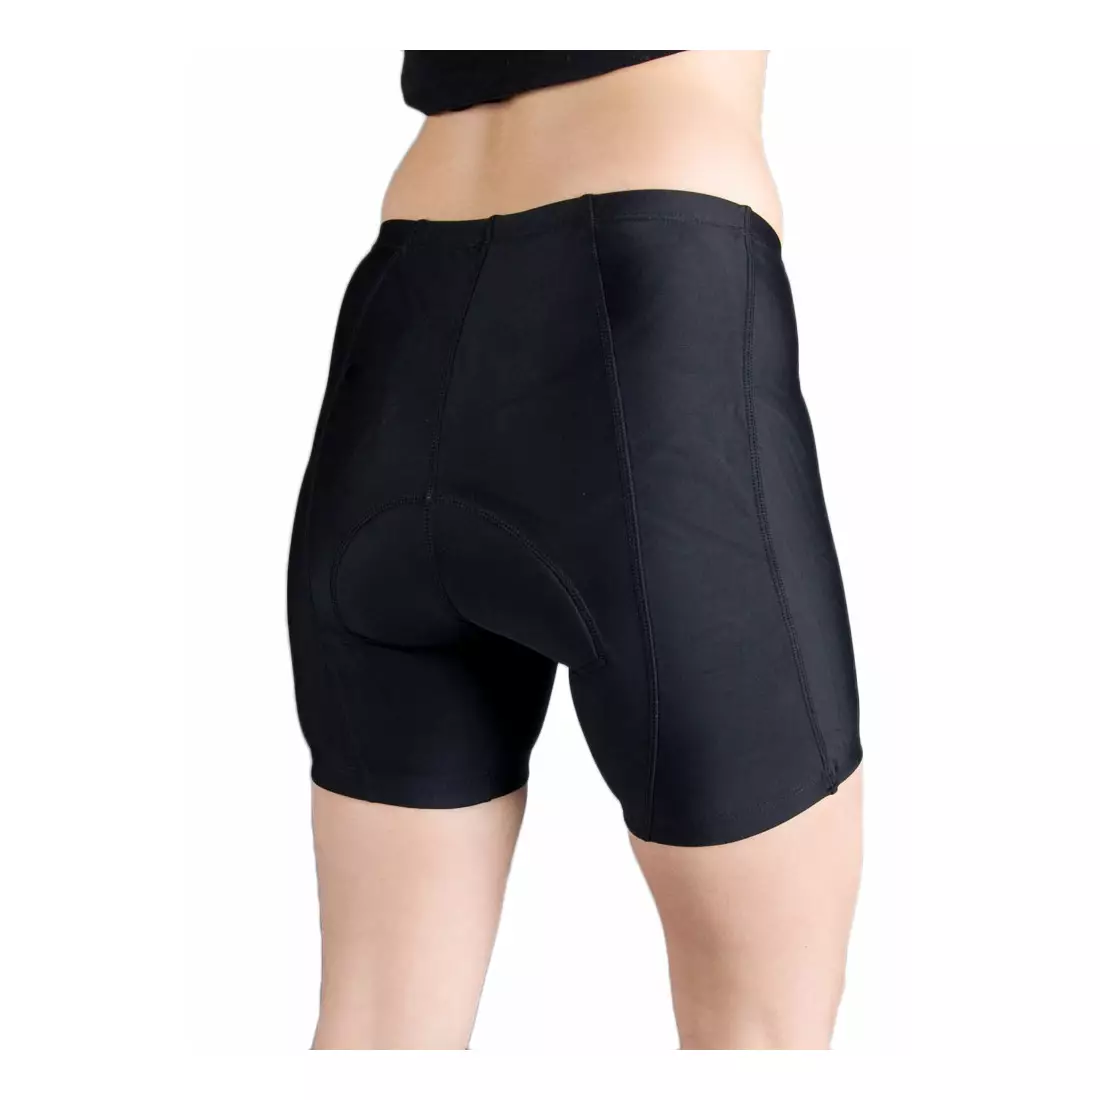 ROGELLI BASIC DE LUXE  women's cycling shorts